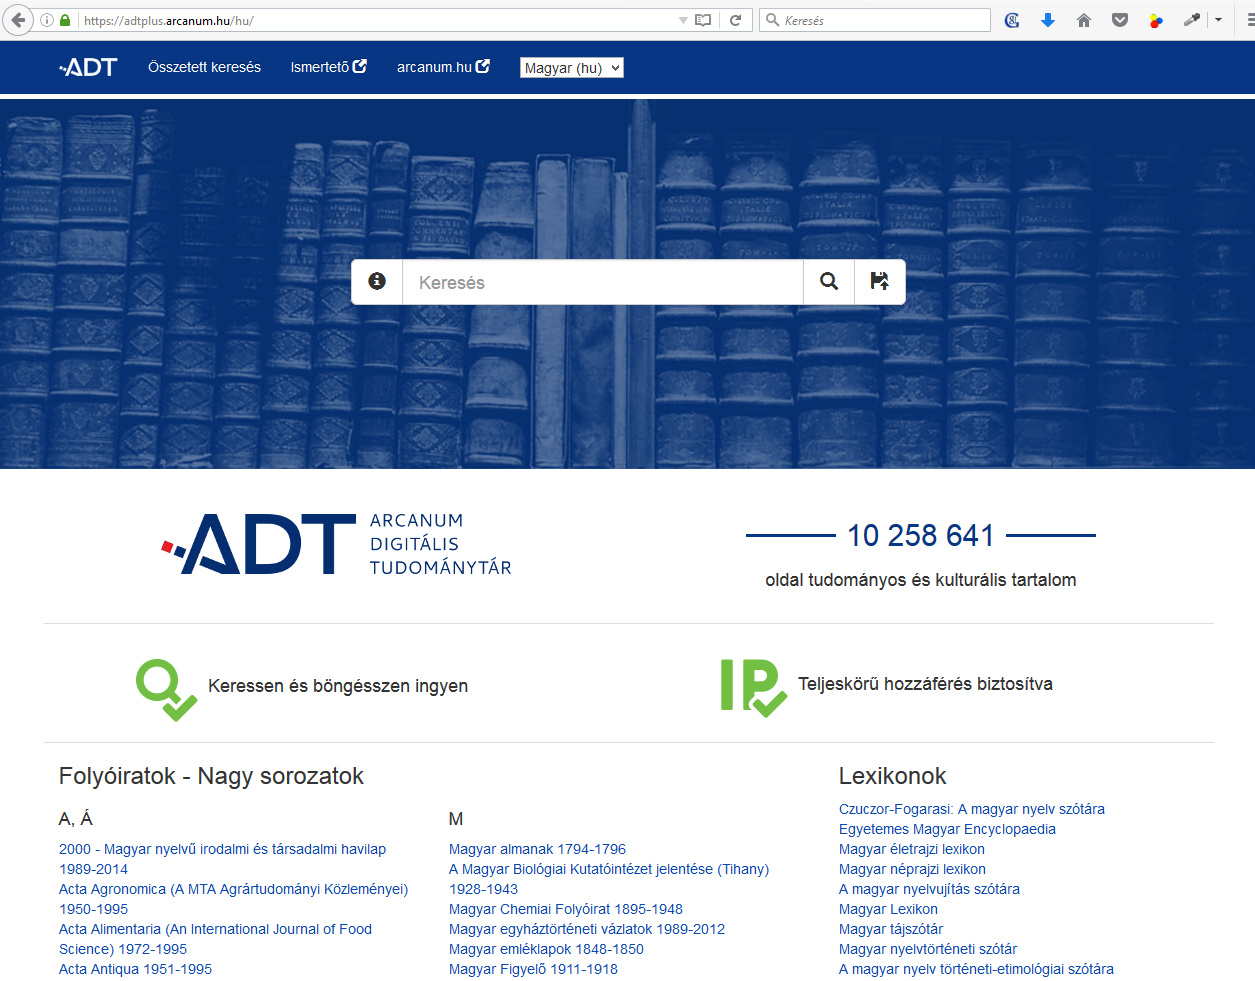 Arcanum Digitális Tudománytár (ADTPlus) - http://adtplus.arcanum.hu